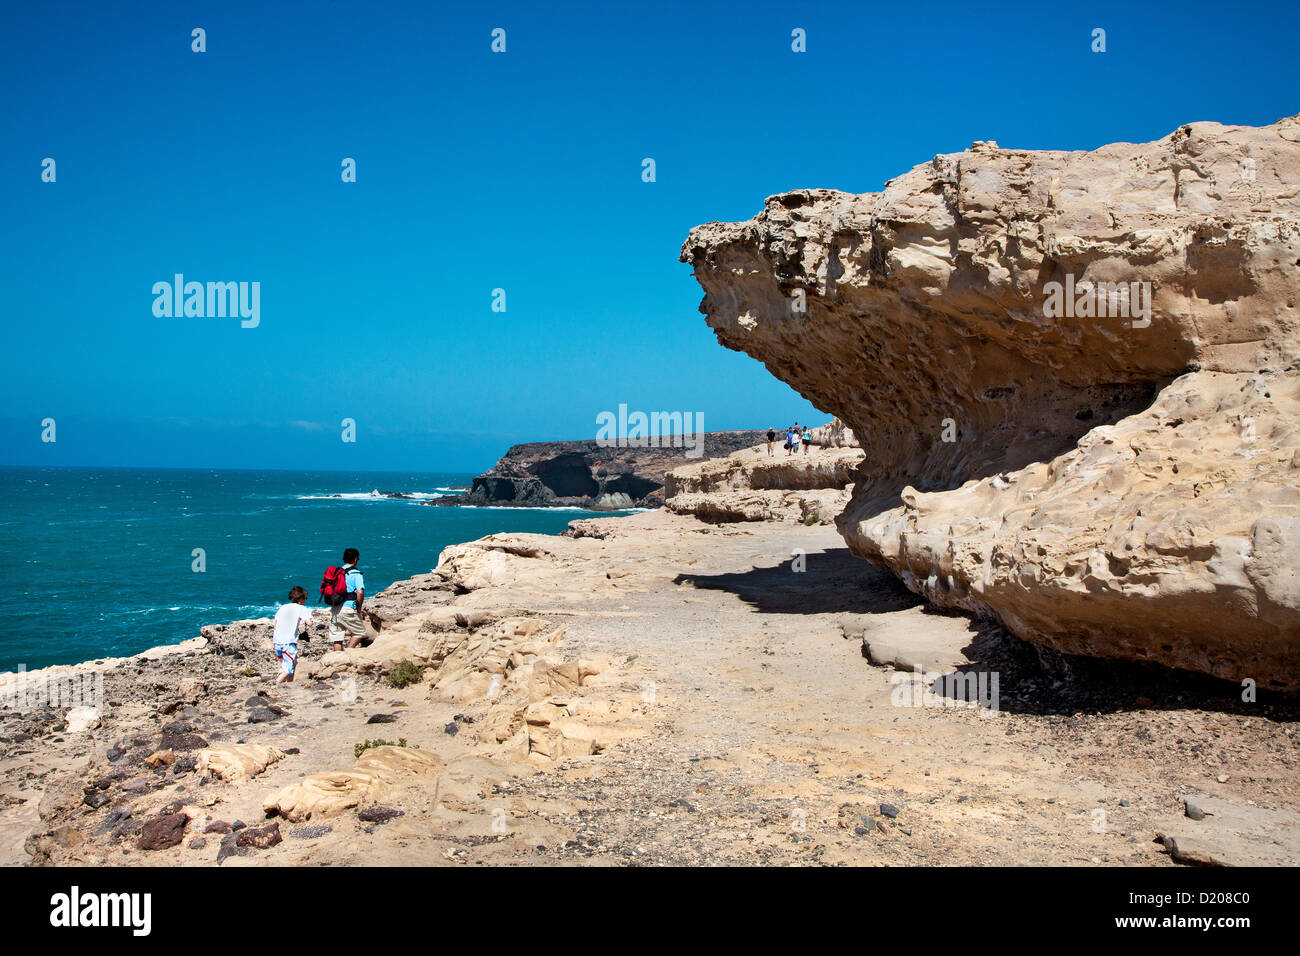 Falaise de craie, Puerto de la Pena, Ajuy, Fuerteventura, Îles Canaries, Espagne Banque D'Images